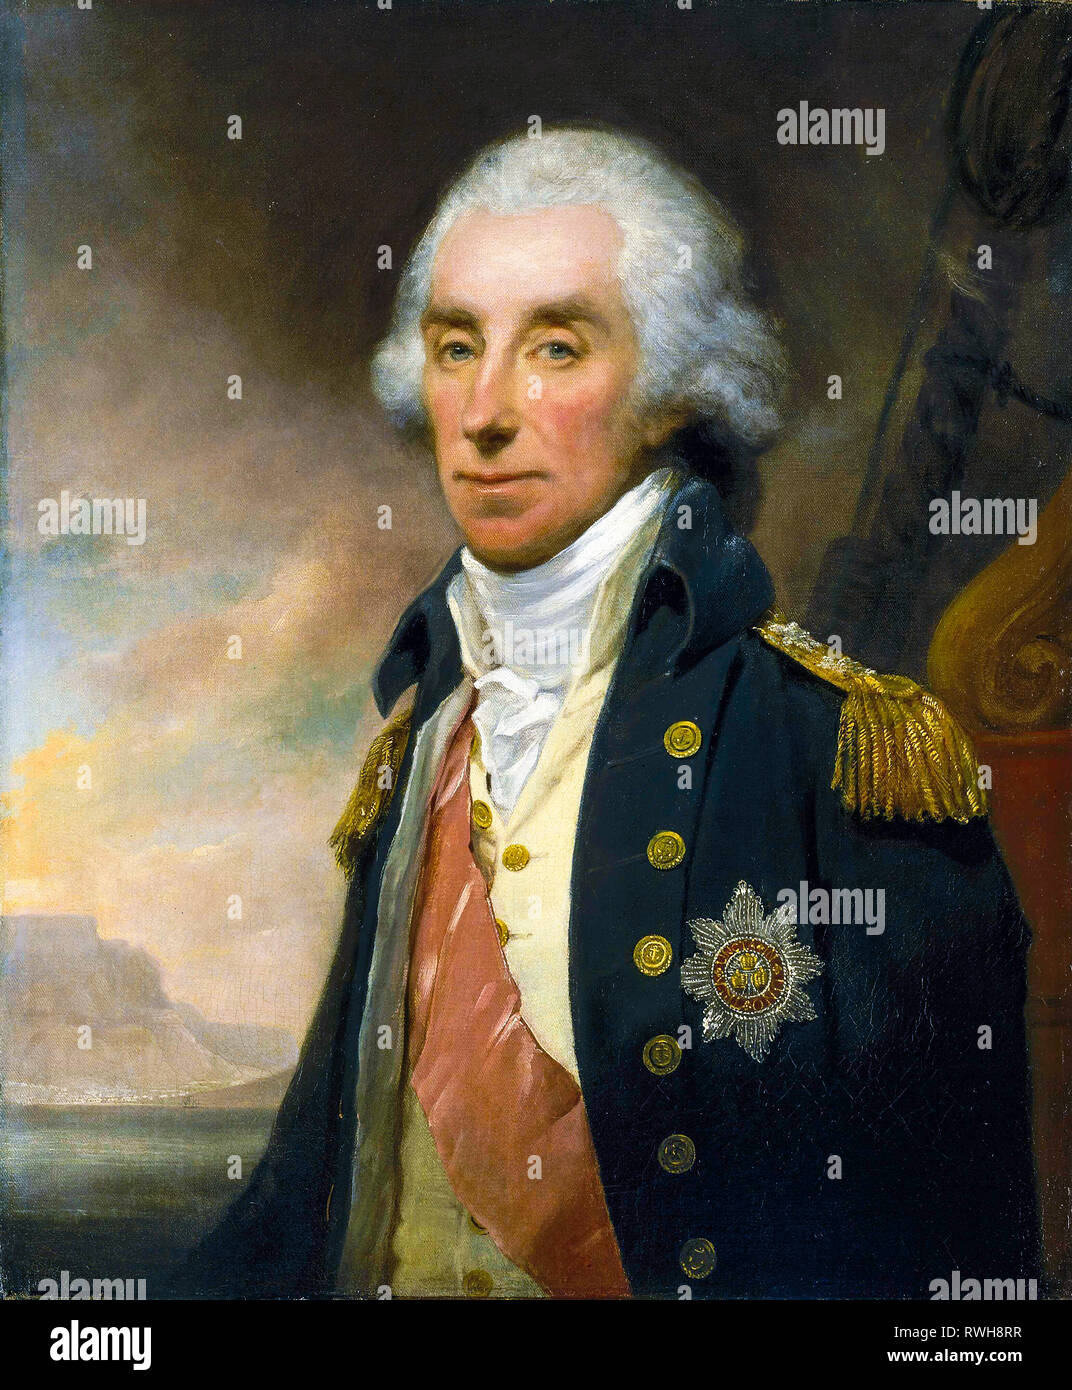 L'amiral Lord George Keith Elphinstone, 1er vicomte Keith (1746-1823), portrait peinture, c. 1799 par William Owen Banque D'Images